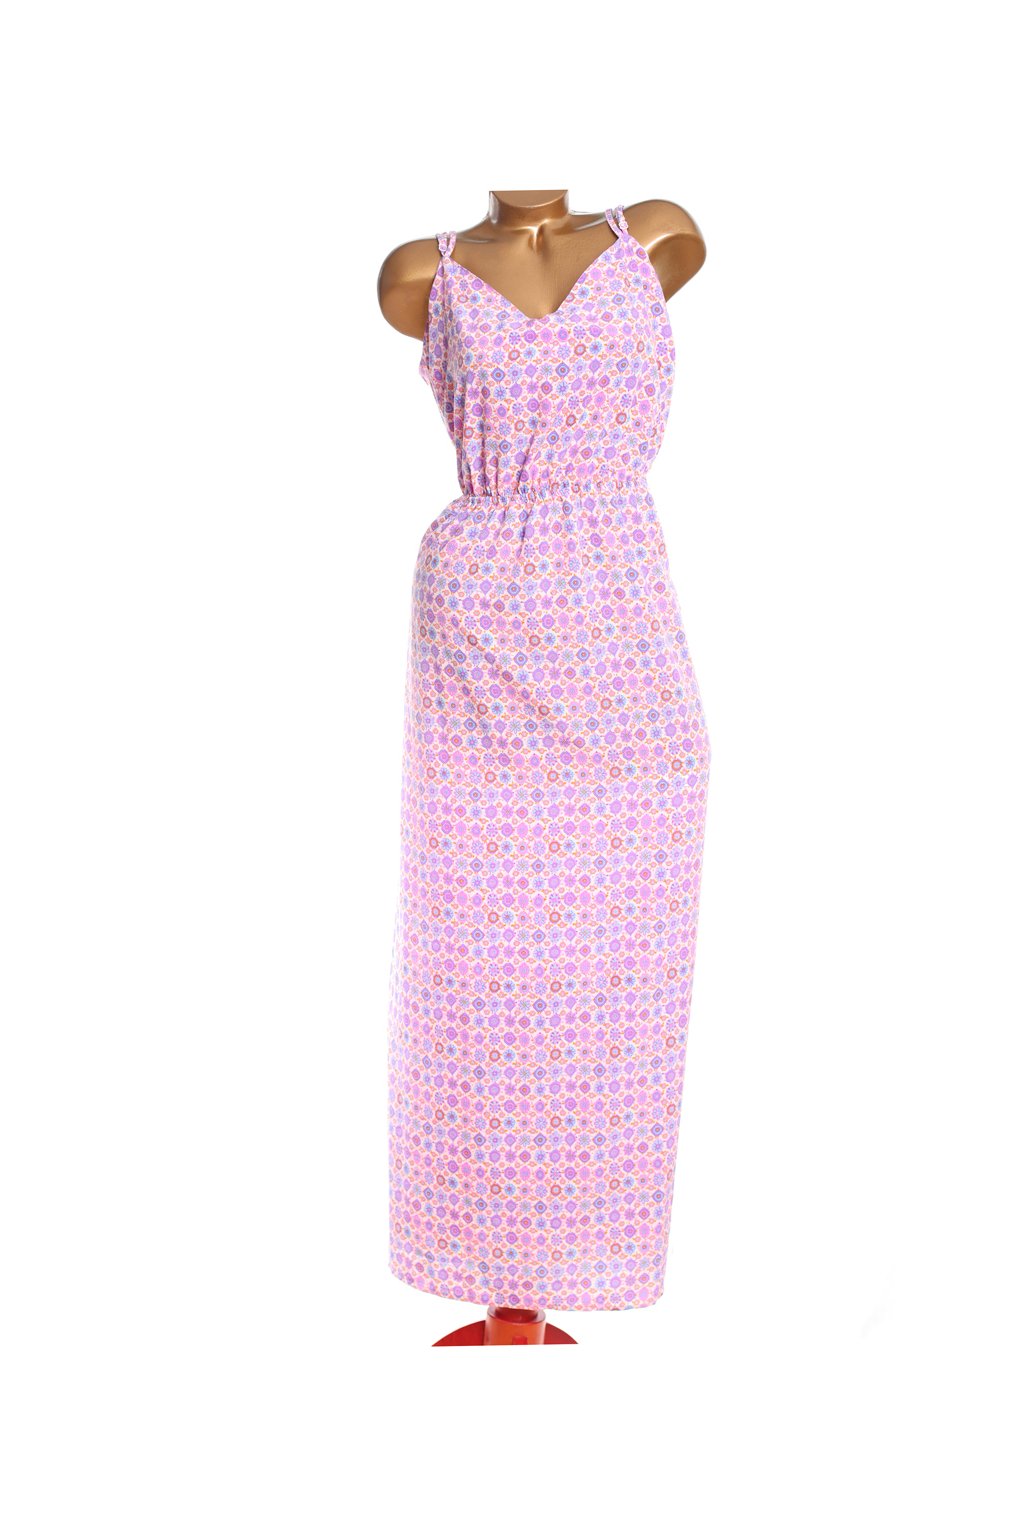 Dámské růžovo-modro-fialové vzorované šaty / ASOS / XXXXL (52) / ANGLIE -  Hitomat - Monika Horká, móda pro plnoštíhléHitomat - Monika Horká, móda pro  plnoštíhlé